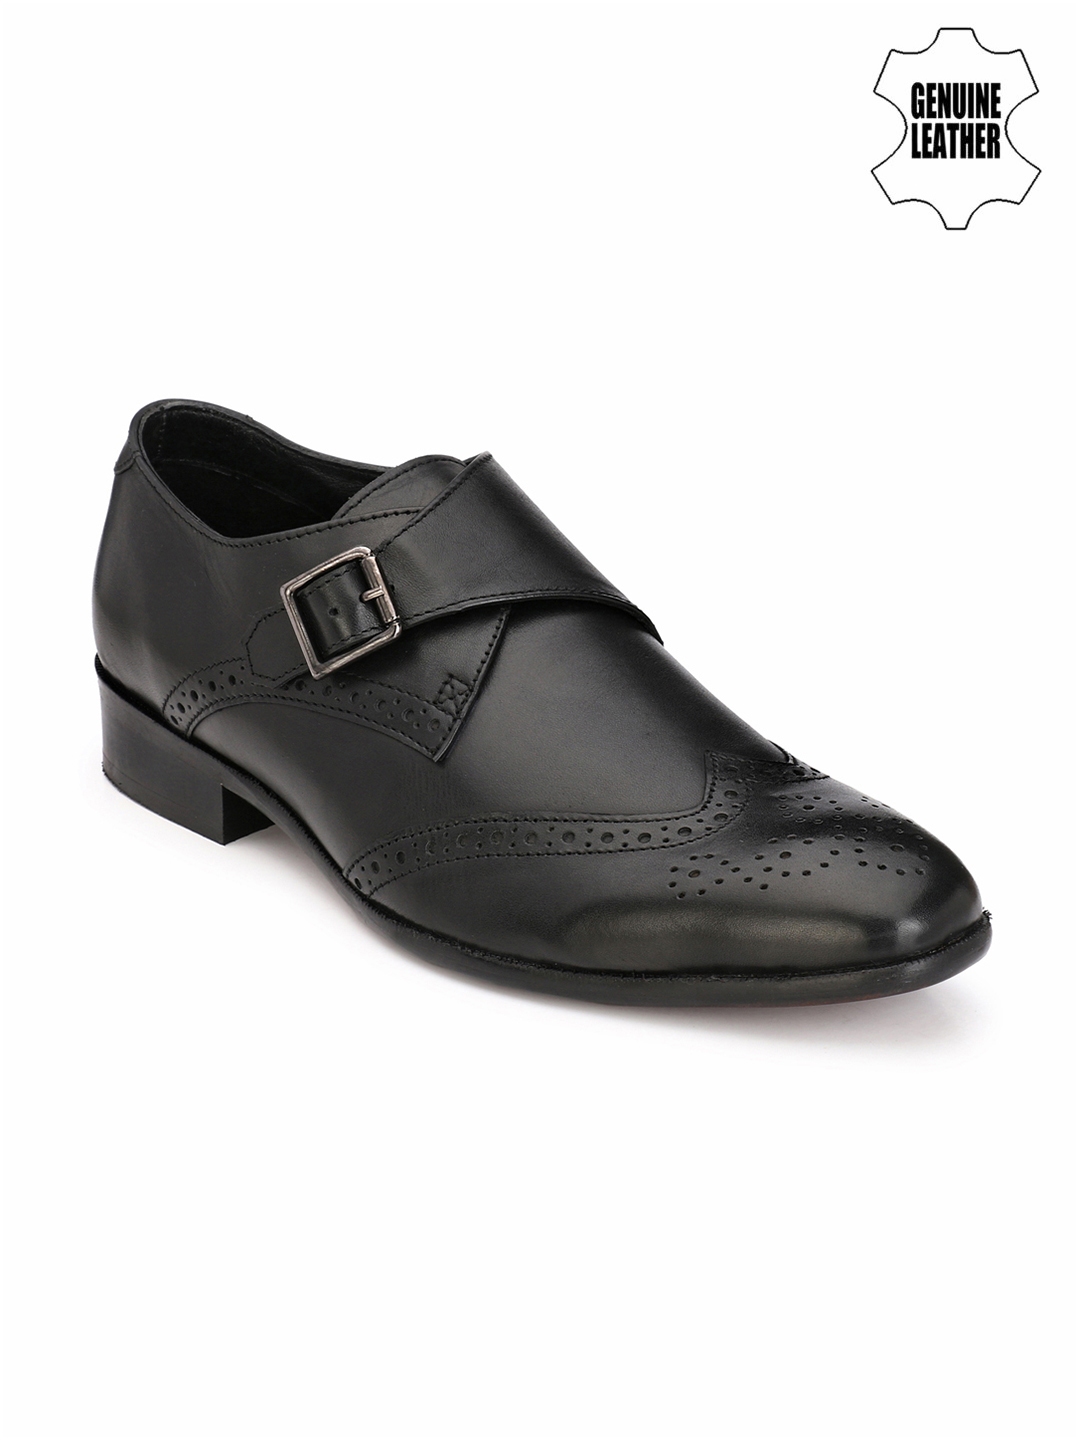 Buy AfroJack Men Black Leather Monks - Formal Shoes for Men 1890043 ...